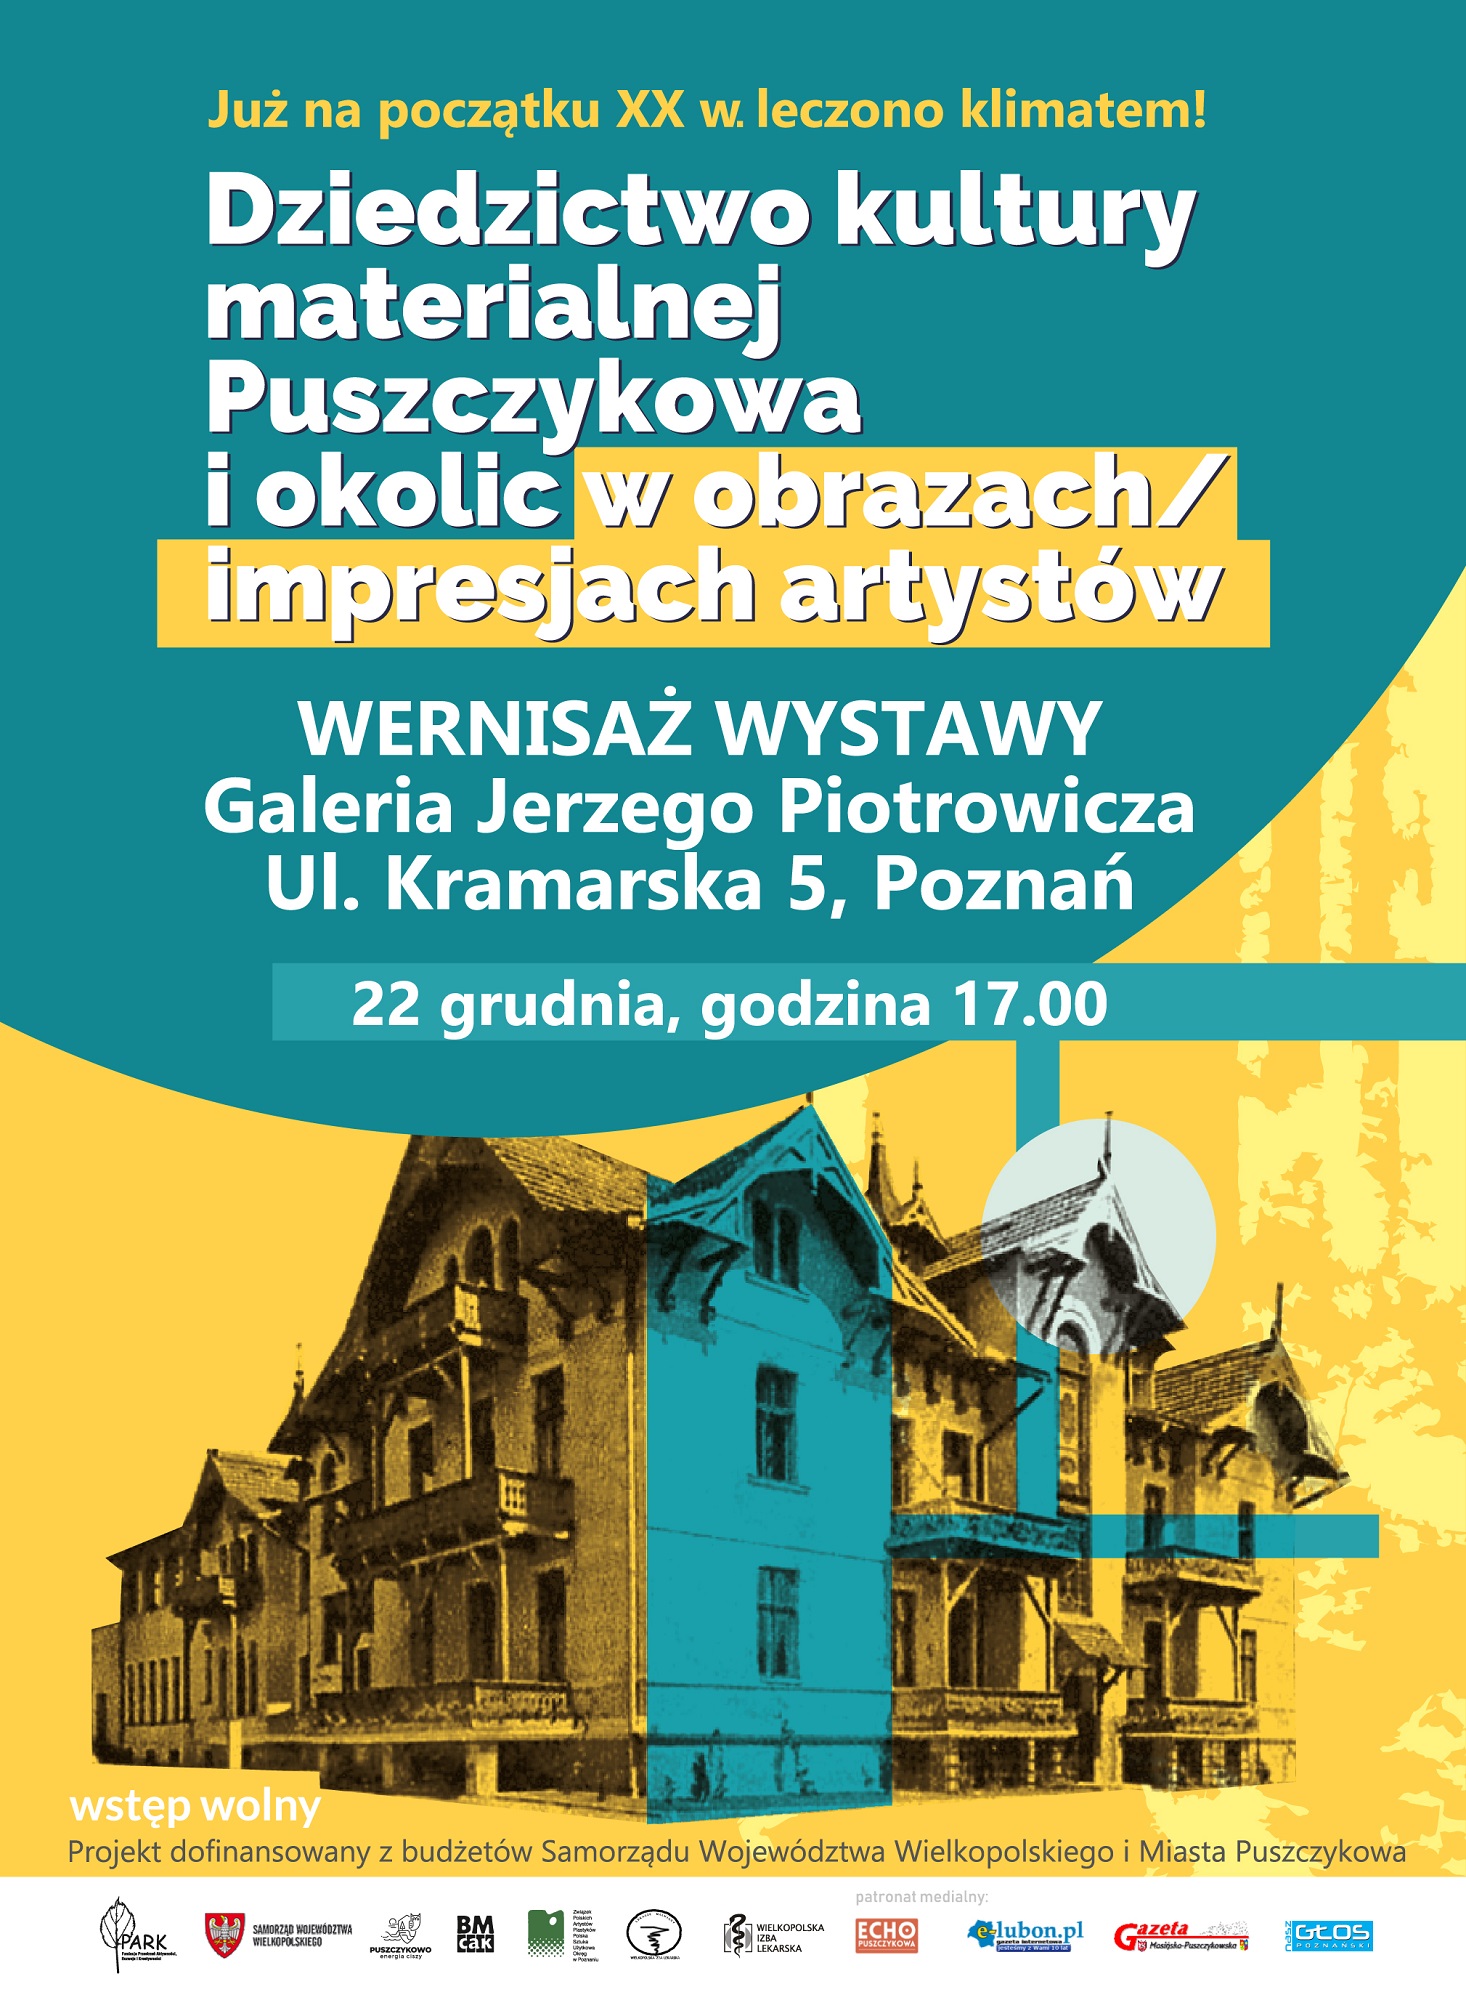 Zapraszamy na wernisaż wystawy pt.: "Dziedzictwo kultury materialnej Puszczykowa i okolic w obrazach/impresjach artystów".